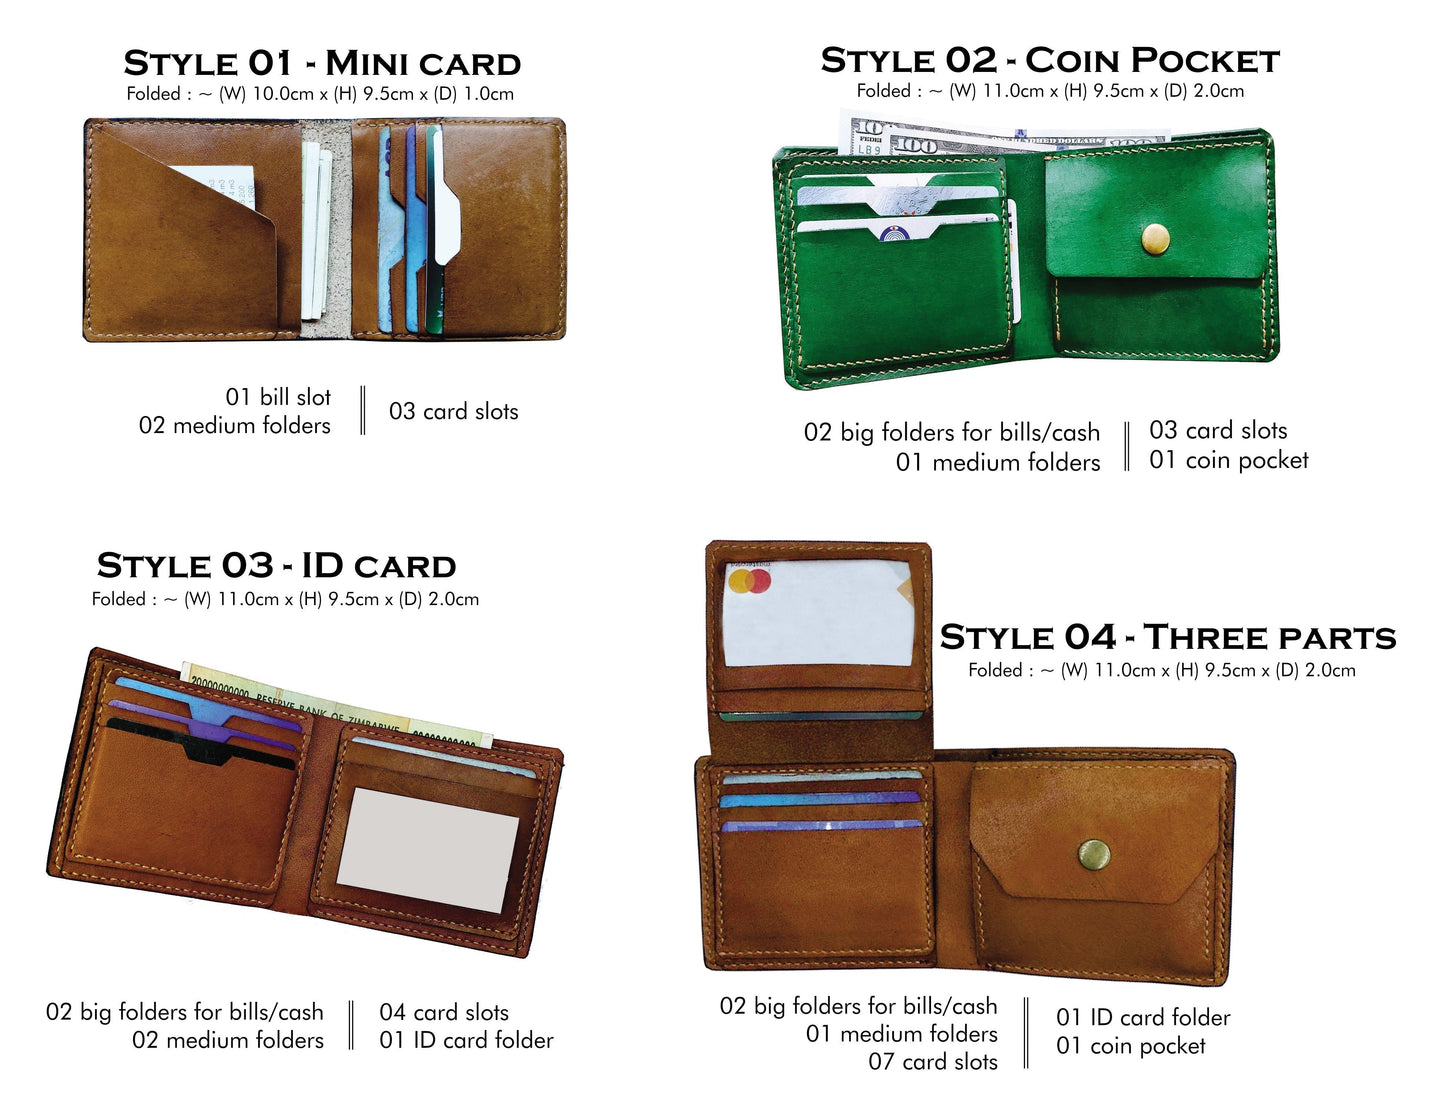 Customized leather wallet, bifold men's wallet, starwars art wallet, starwars gift ideas for boy, The mandalorian wallet